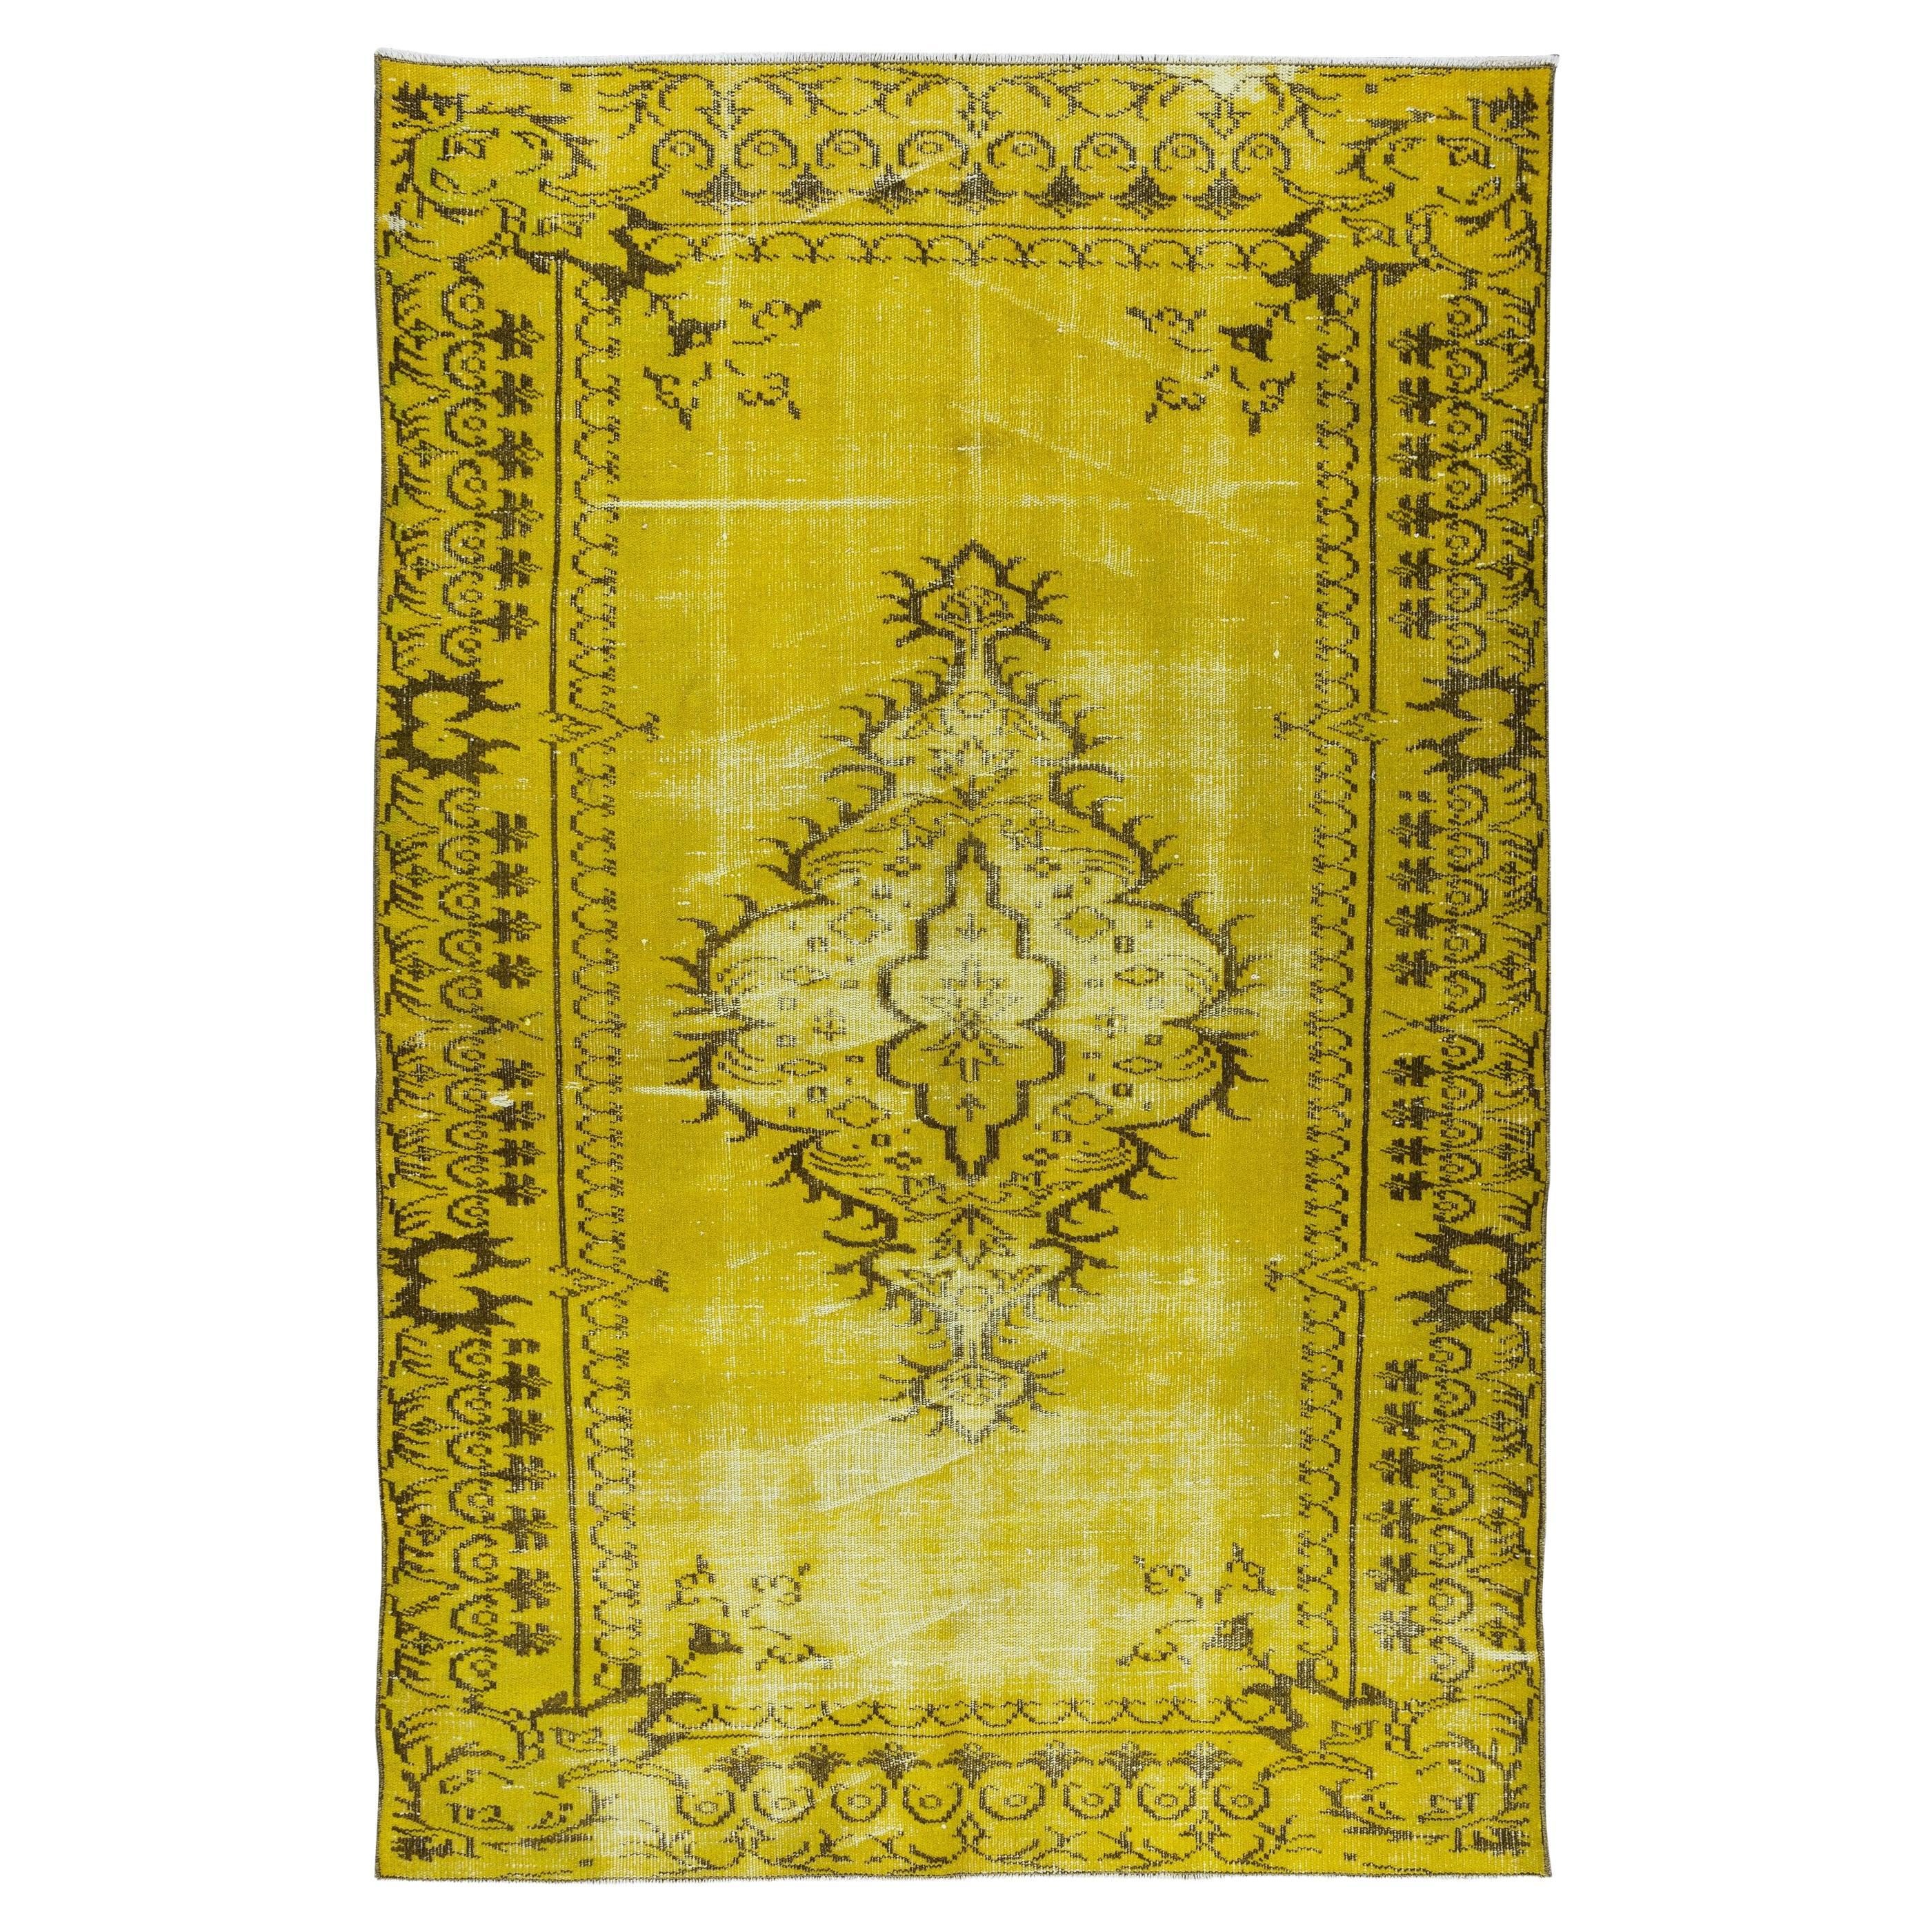 Handgefertigter türkischer Overdyed-Teppich in Gelb mit Medaillon-Design, 5.2x8.3 m